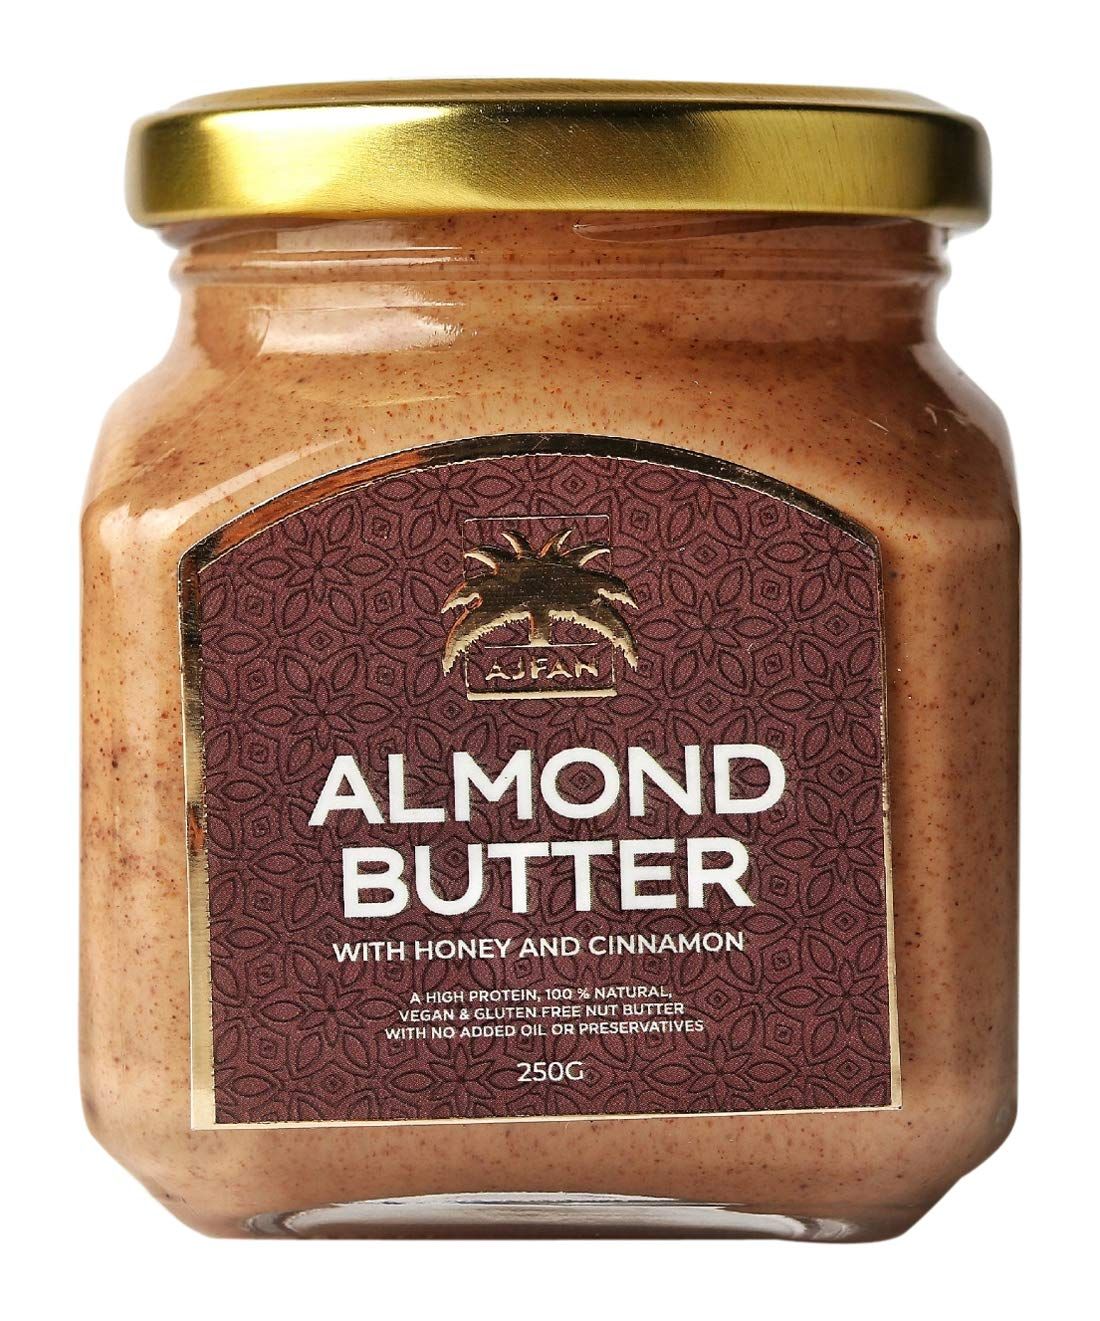 Ajfan Almond Butter Image